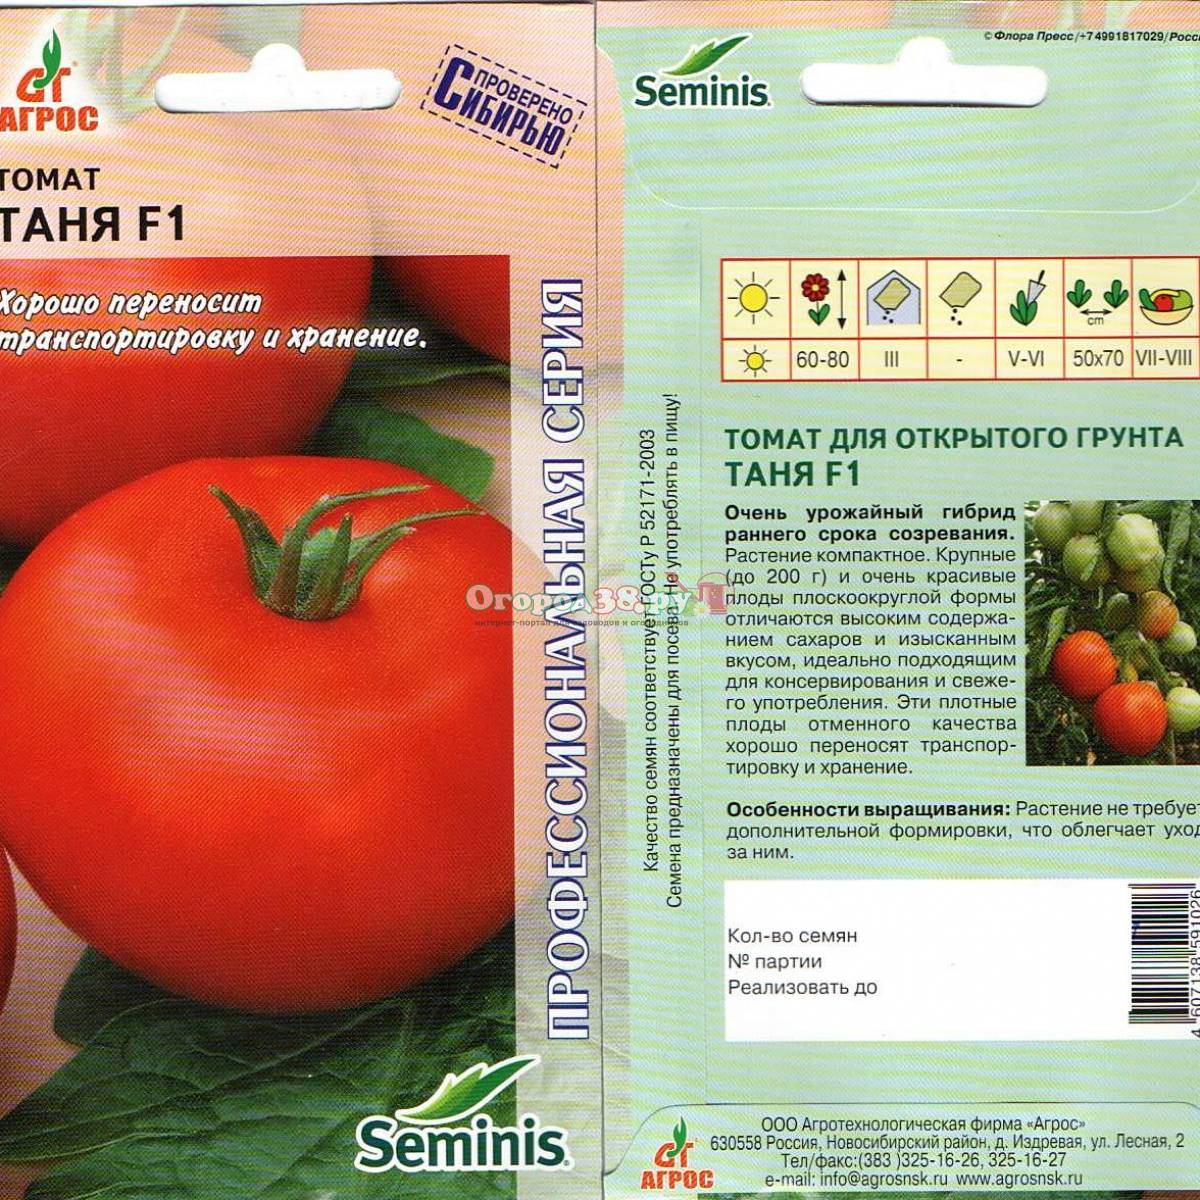 Описание томата султан f1 и выращивание гибрида